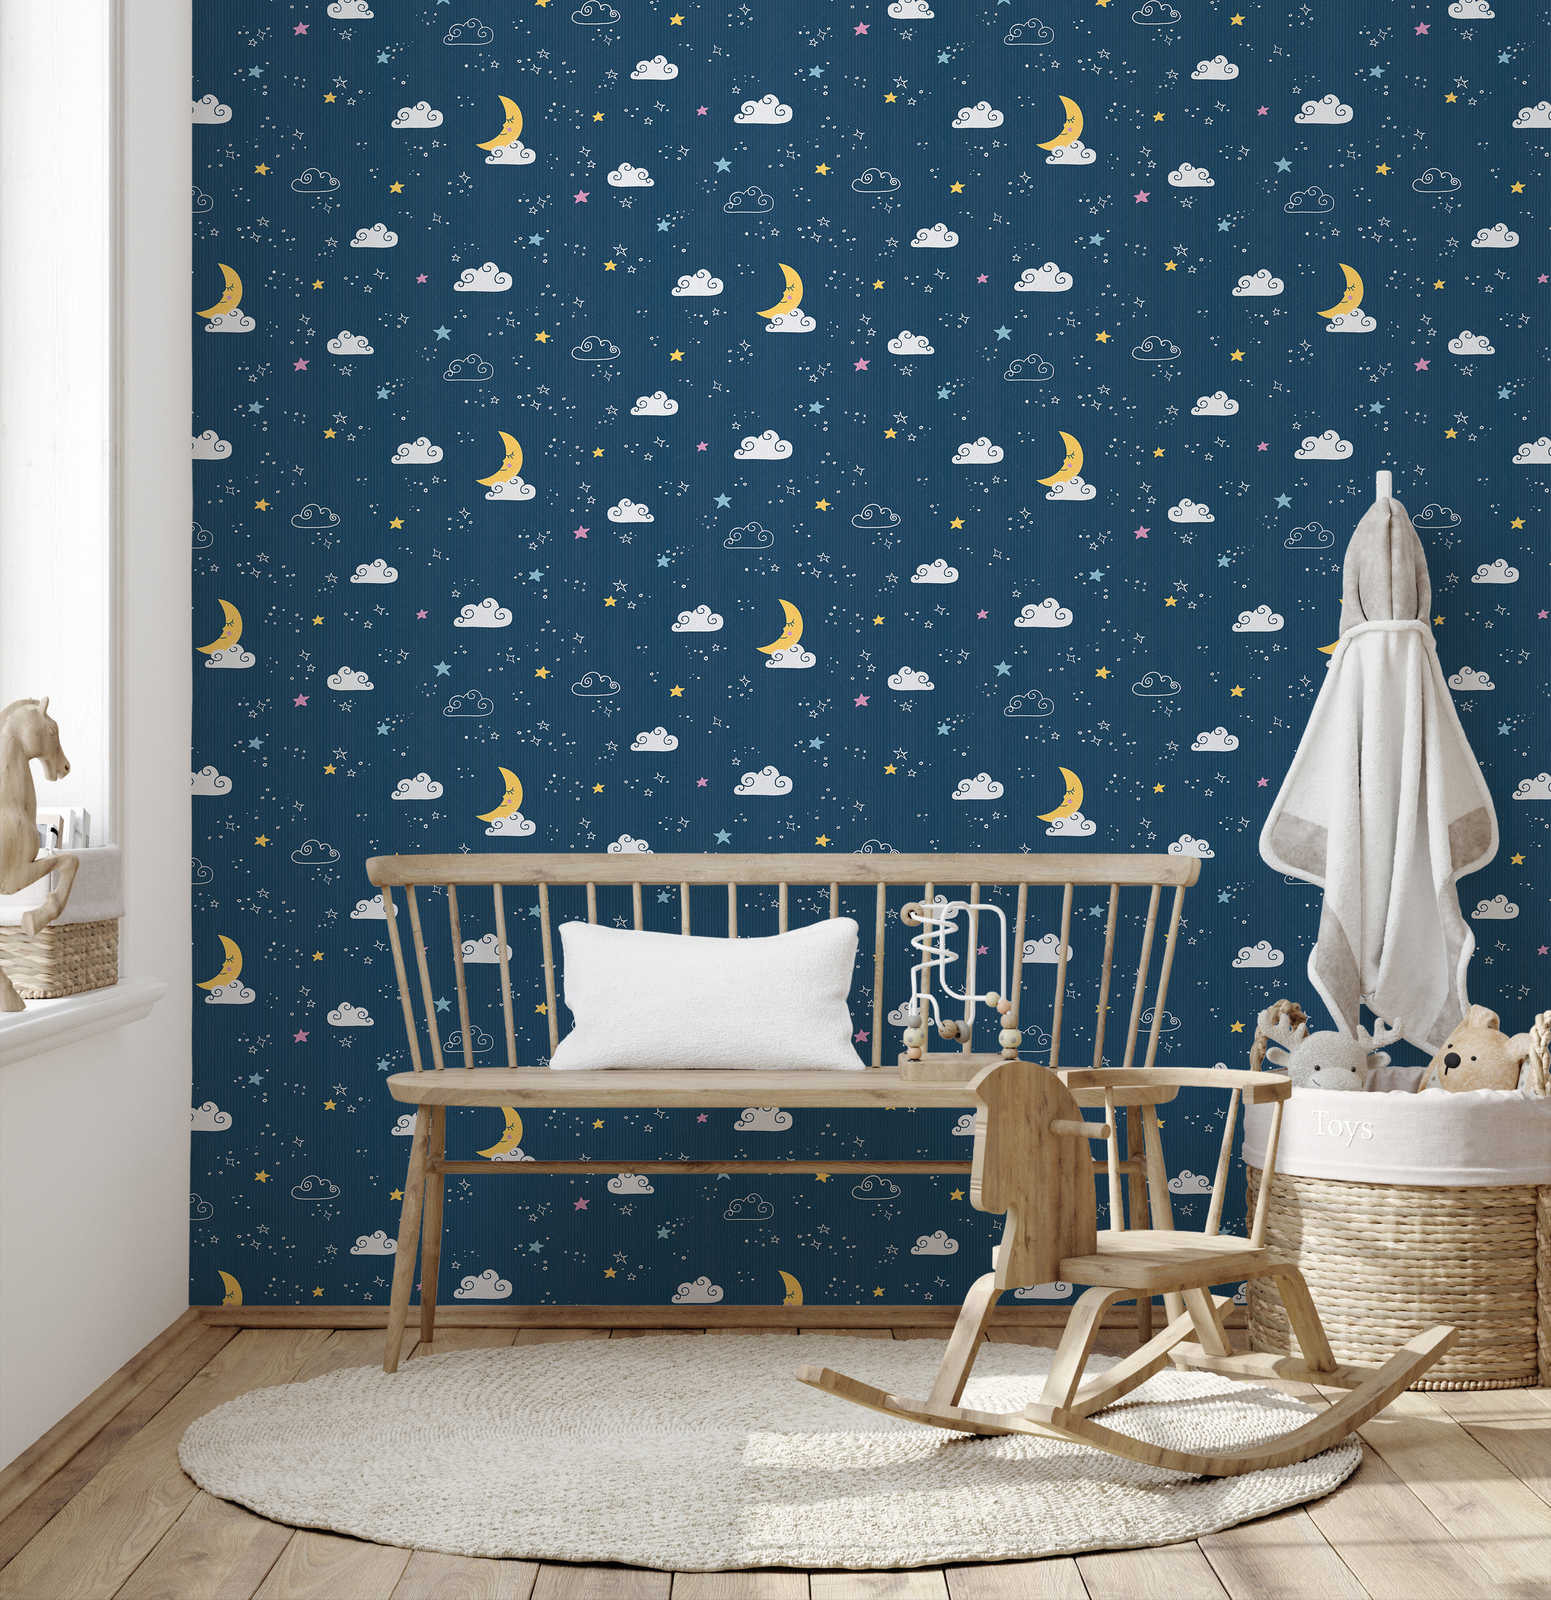             Kinderzimmer Tapete Nachthimmel – Blau, Weiß, Gelb
        